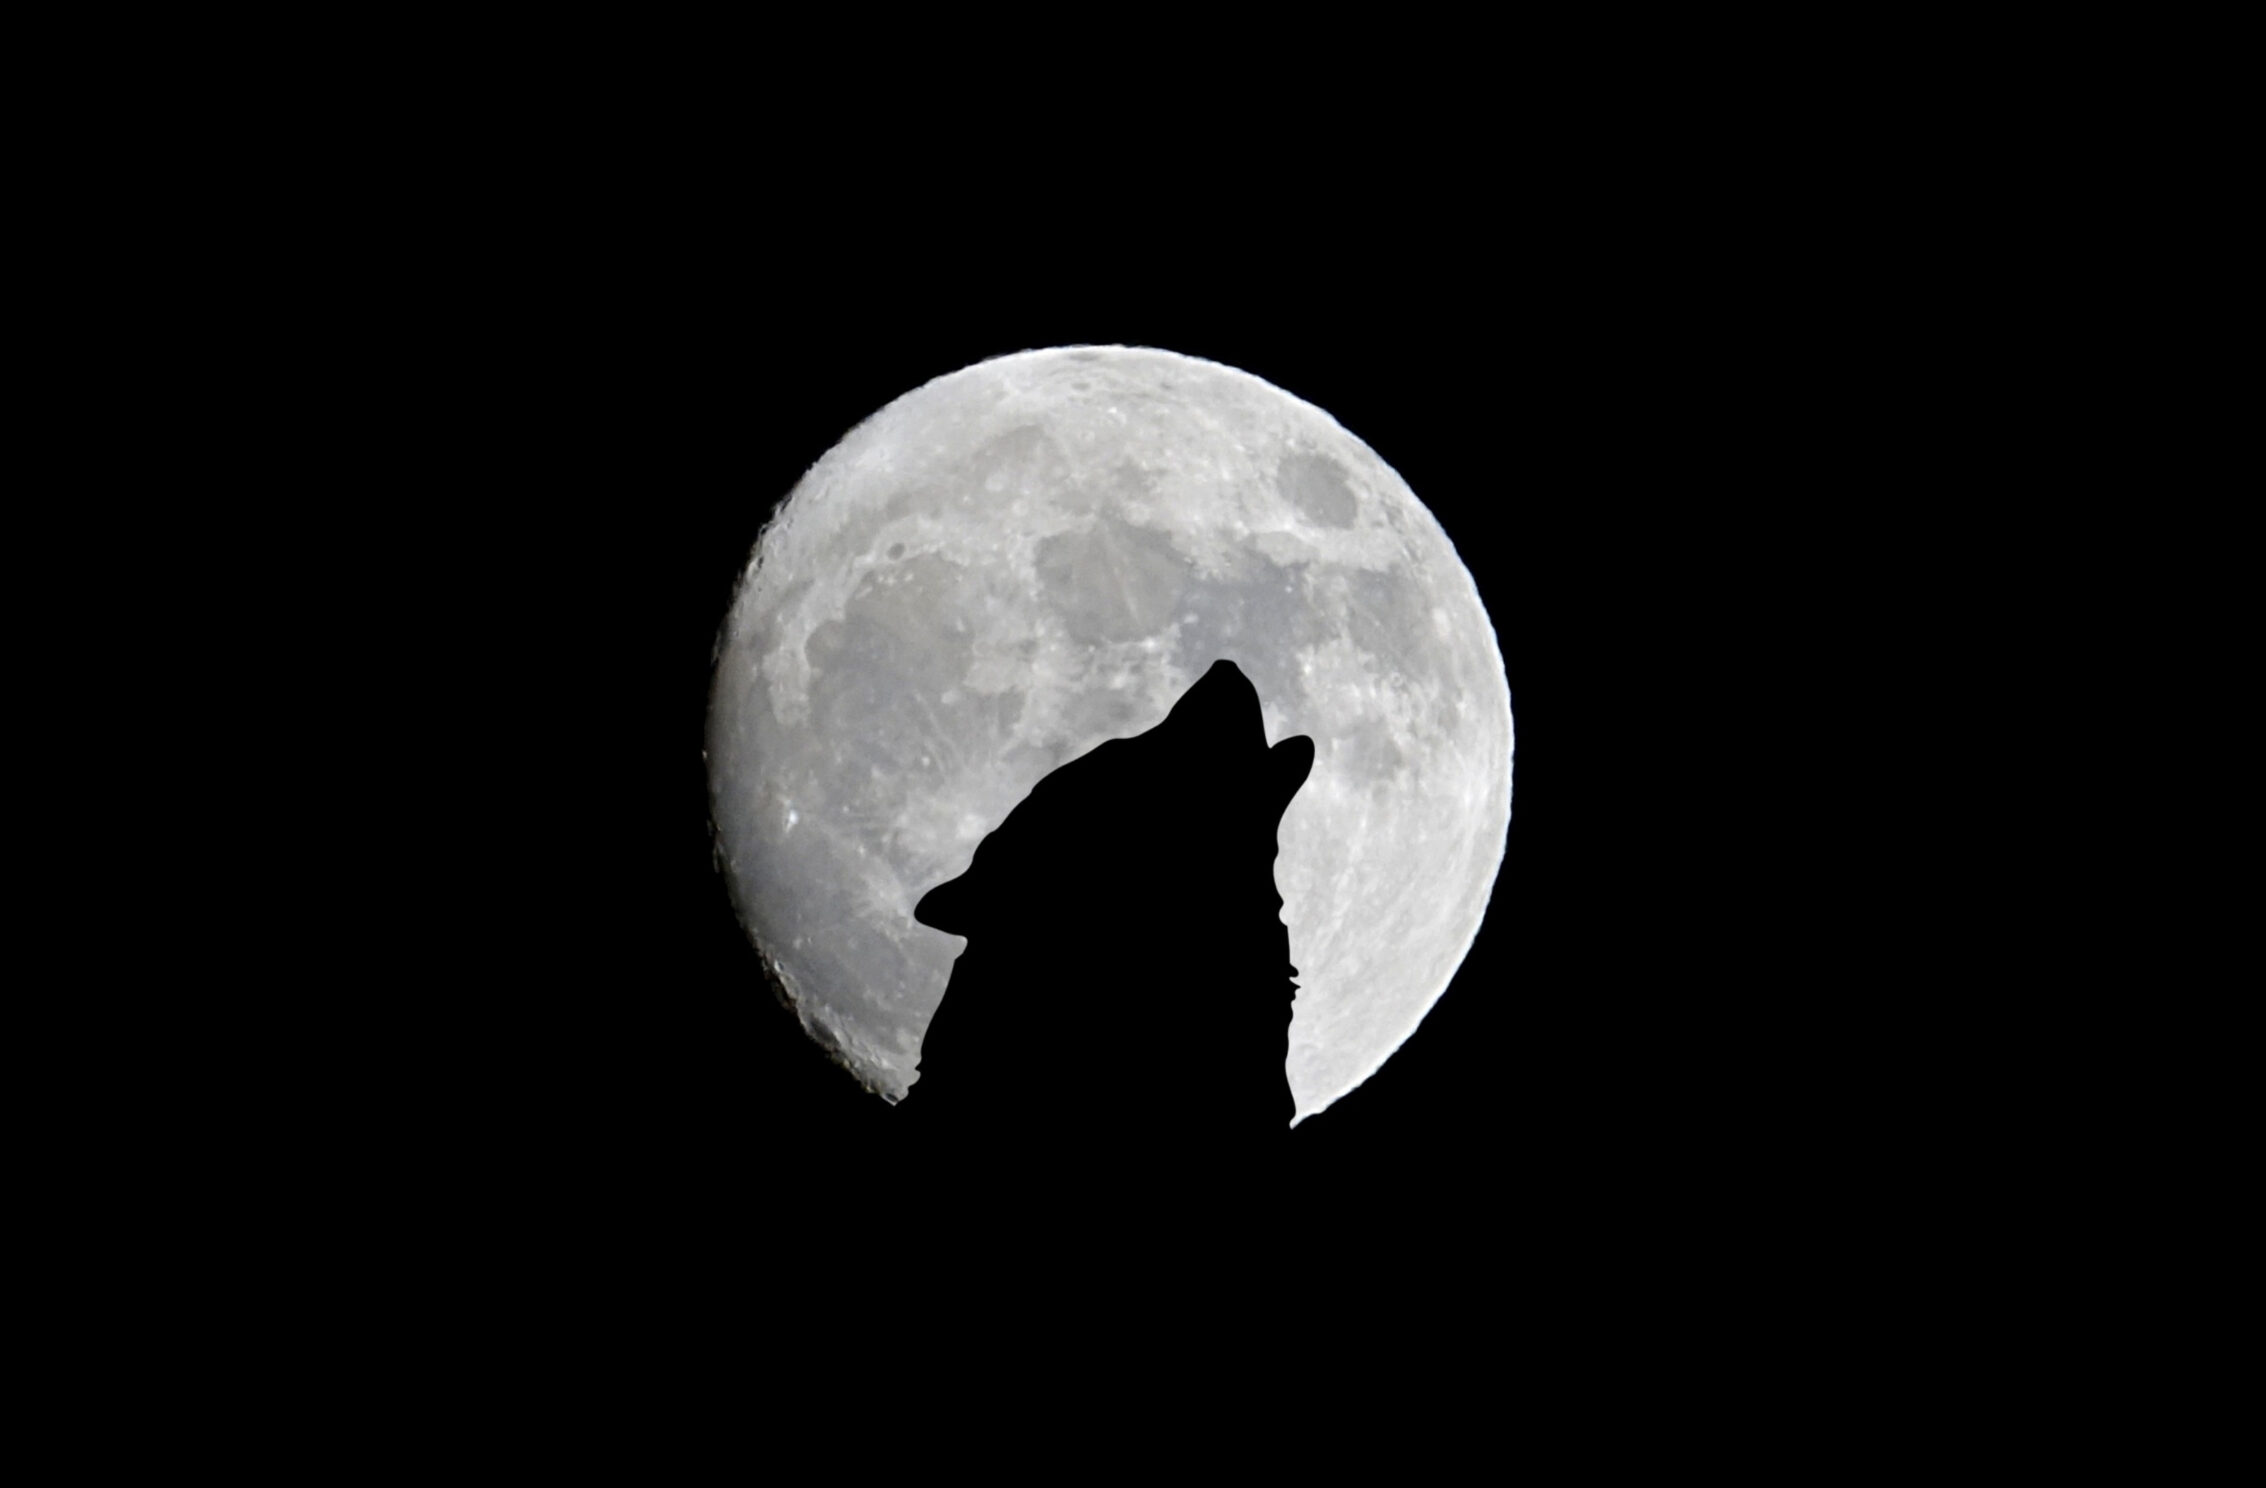 2266x1488 iPad Mini wallpapers Silhouette of Wolf Full Moon Night Darkness iPad Wallpaper 2266x1488 pixels resolution